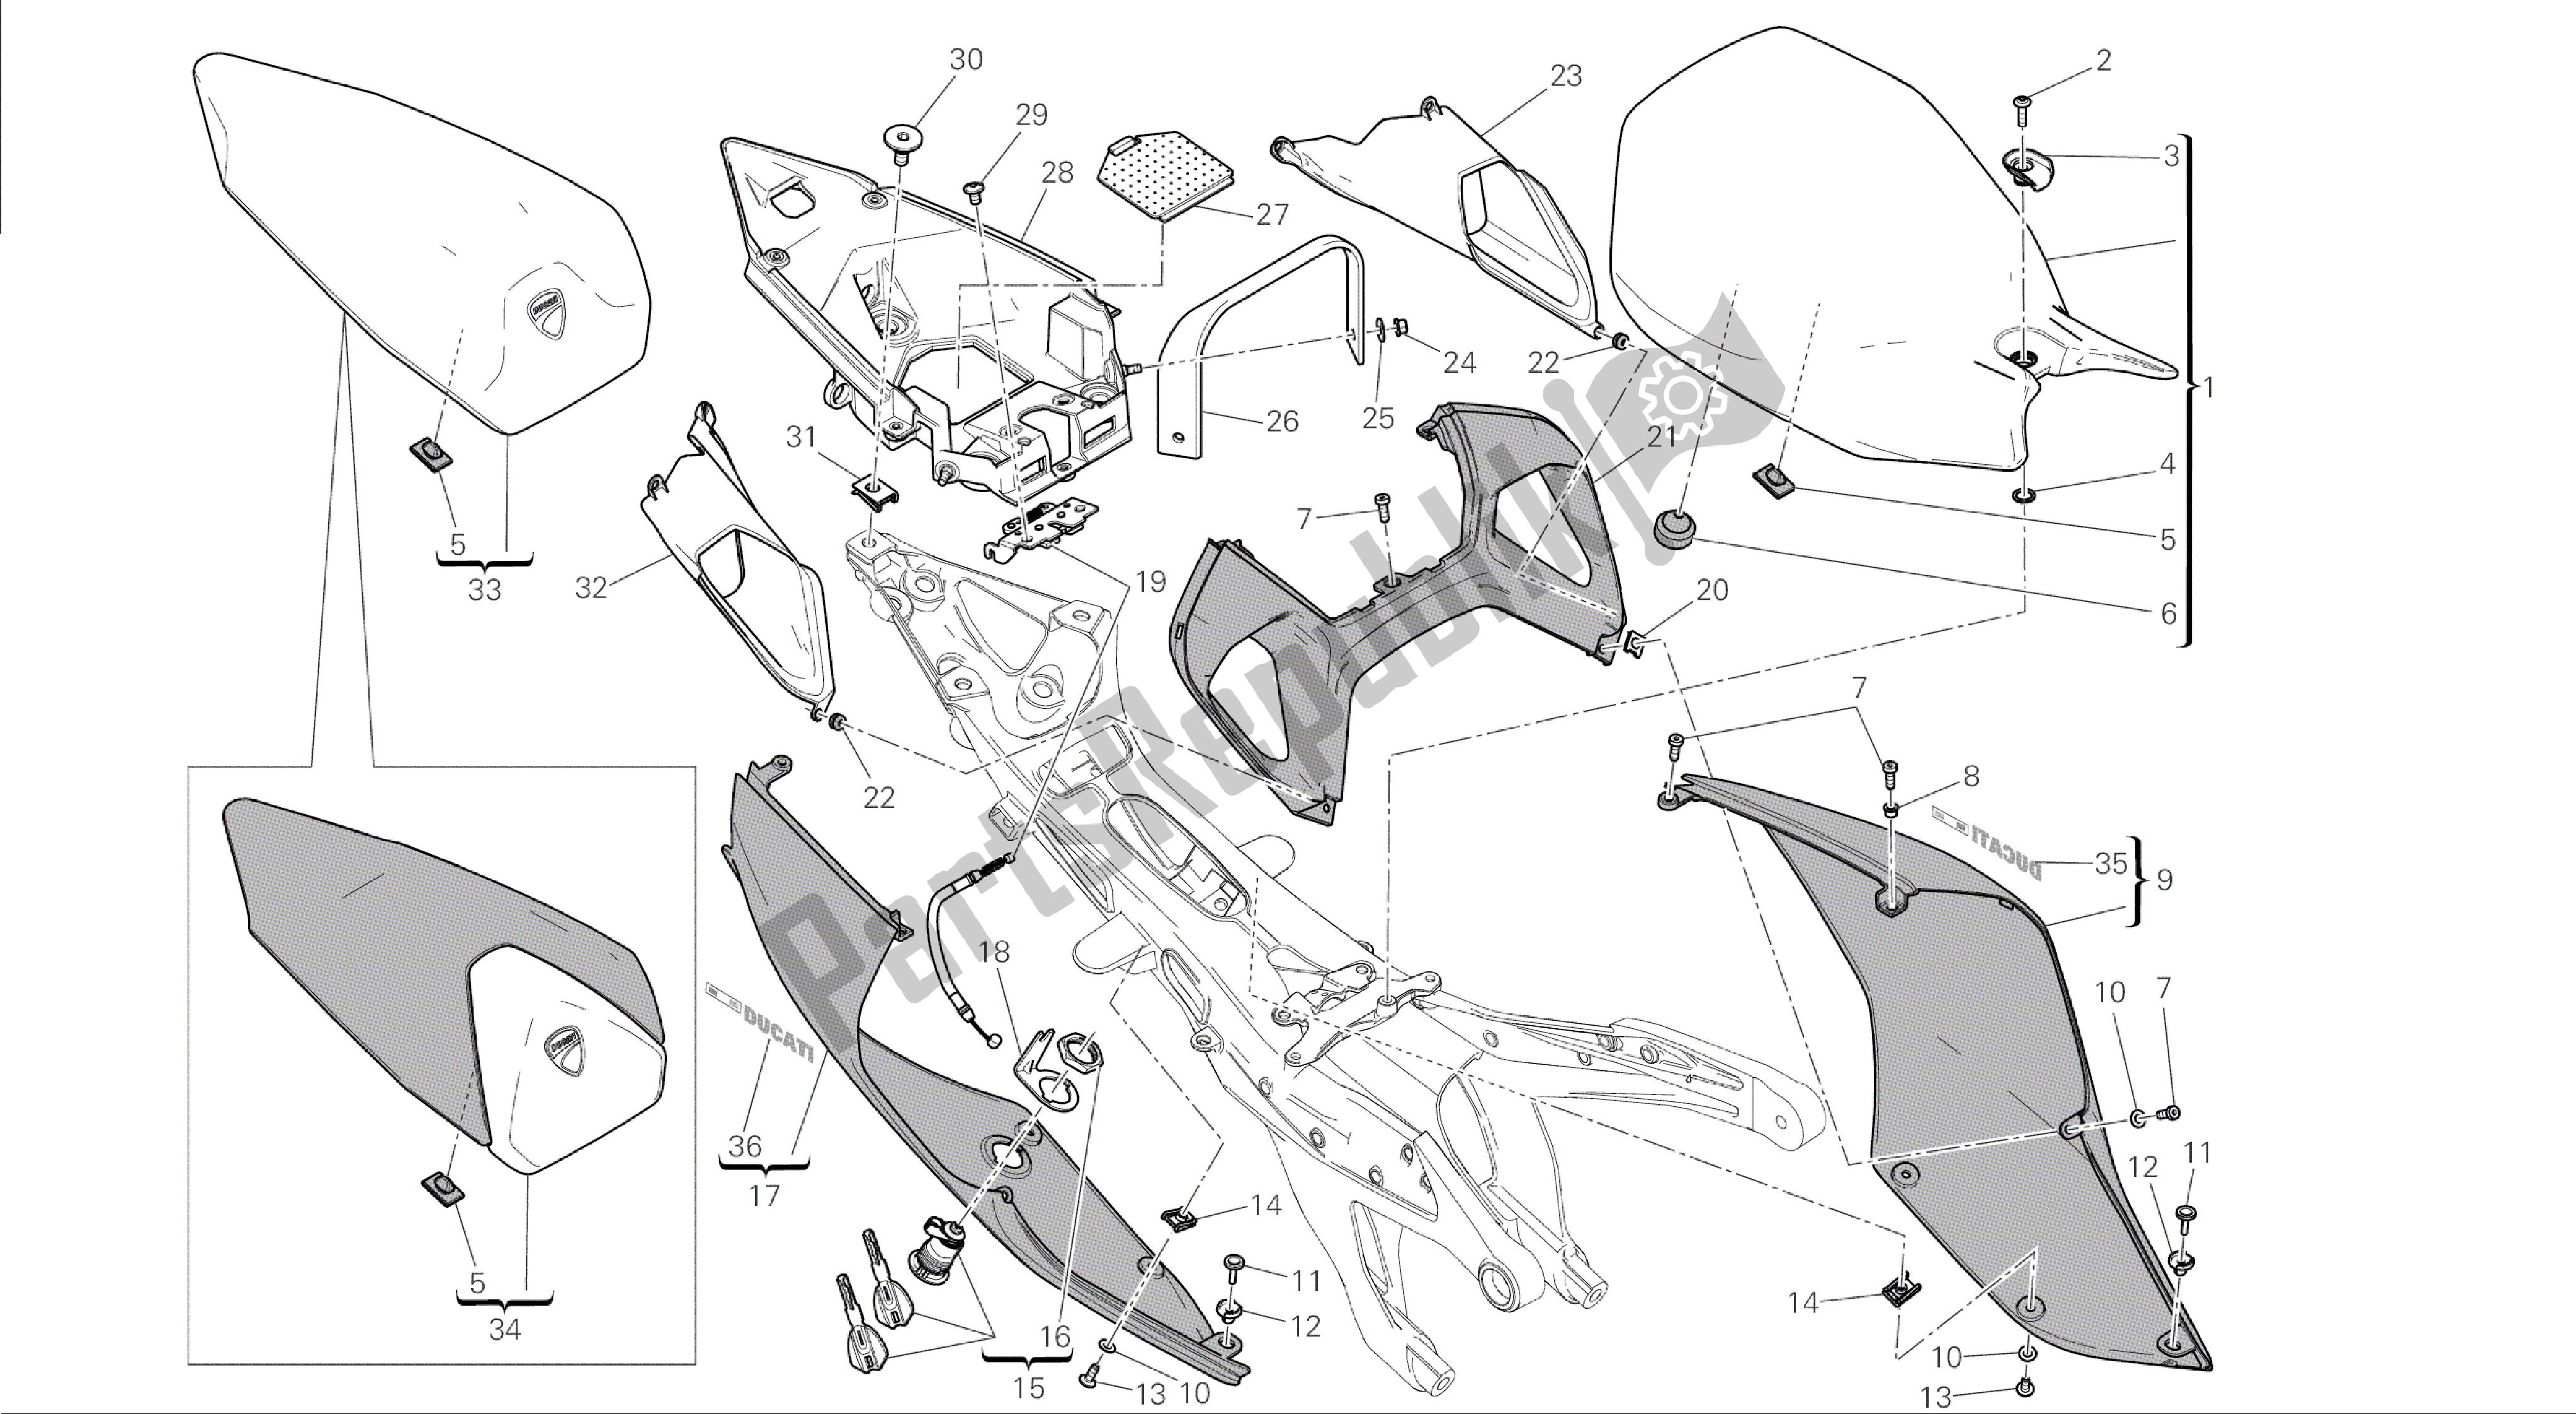 Todas las partes para Dibujo 033 - Asiento [mod: 1199 Abs; Xst: Marco De Grupo Aus, Bra, Chn, Eur, Fra, Jap] de Ducati Panigale ABS 1199 2014